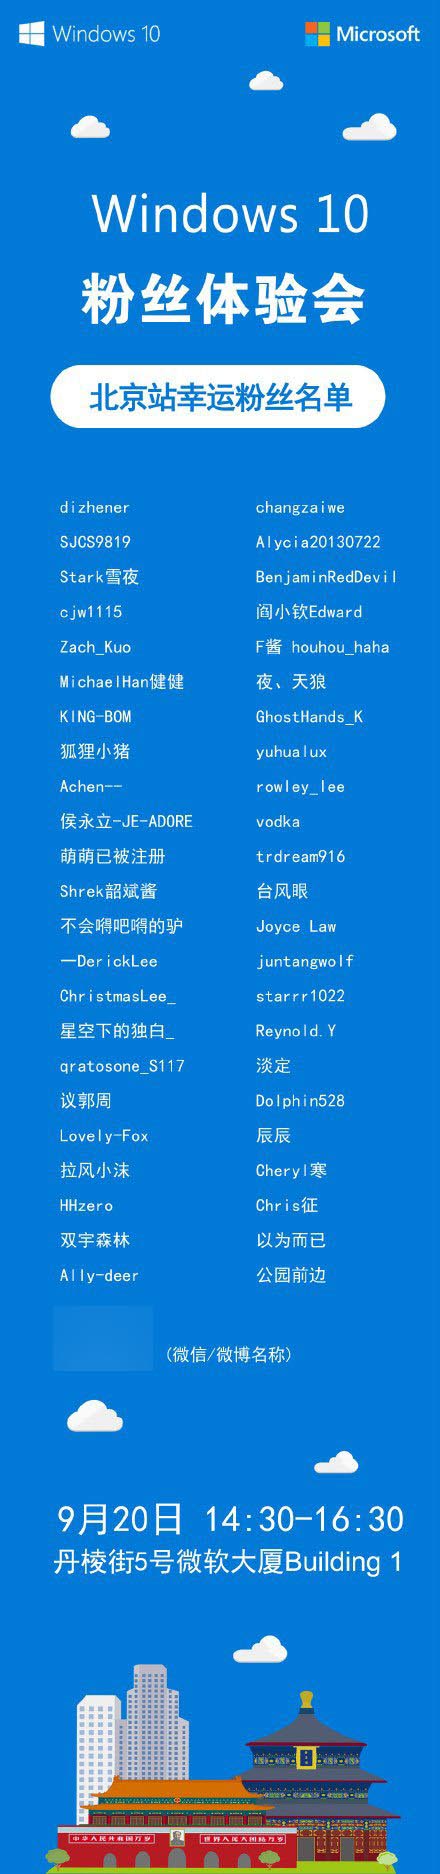 9月20日微软中国Win10粉丝体验会北京站粉丝名单揭晓”